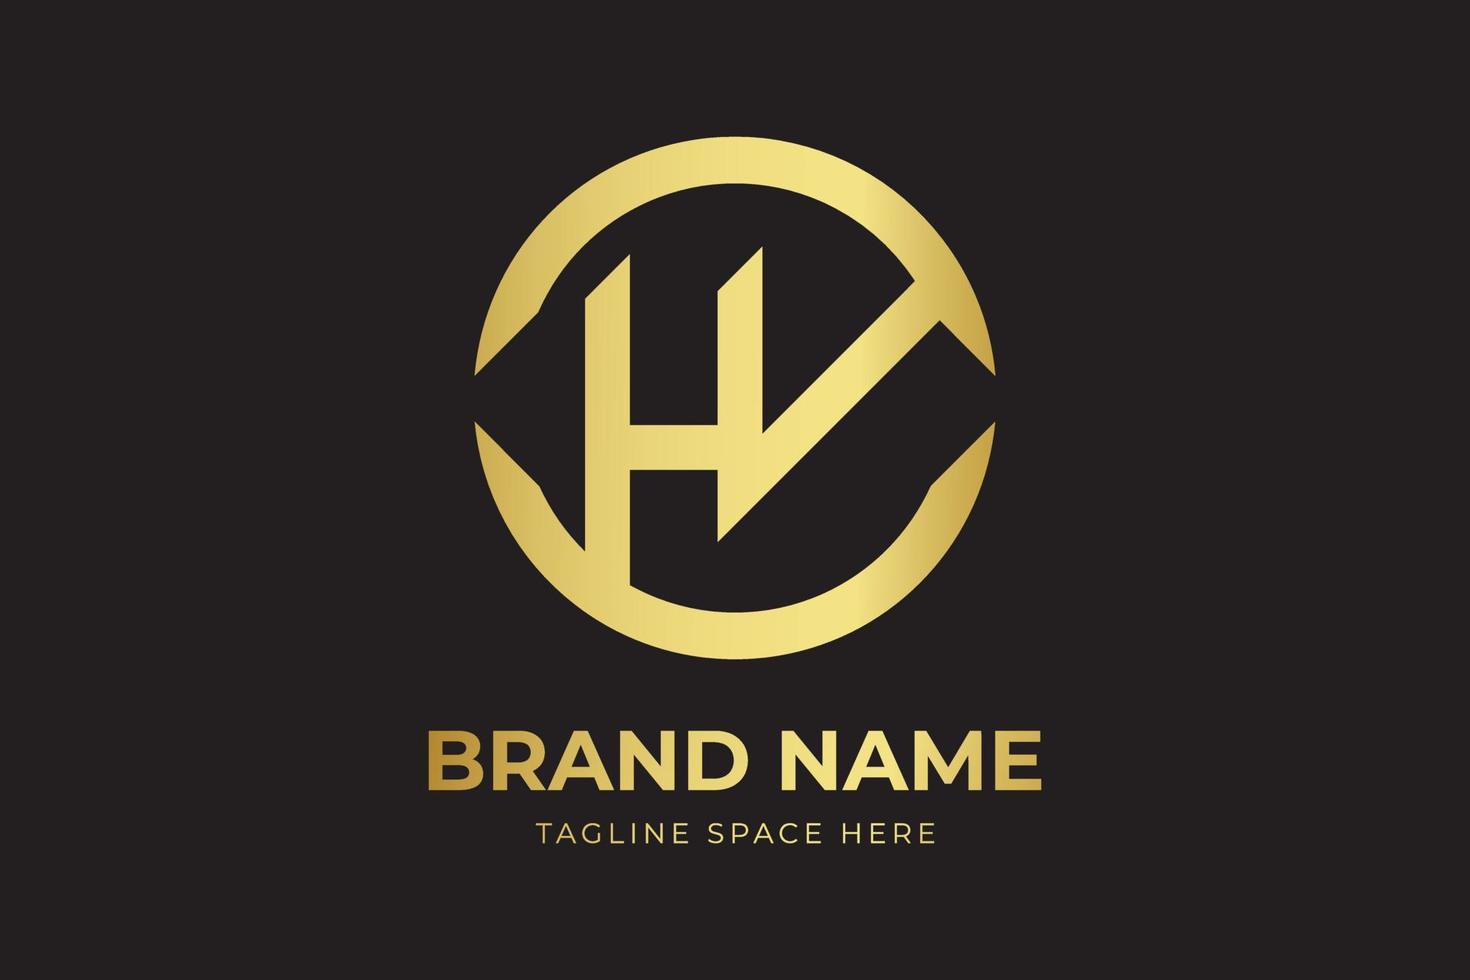 HV letter mark circle logo design with gold color. HV letter creative modern elegant logo design vector